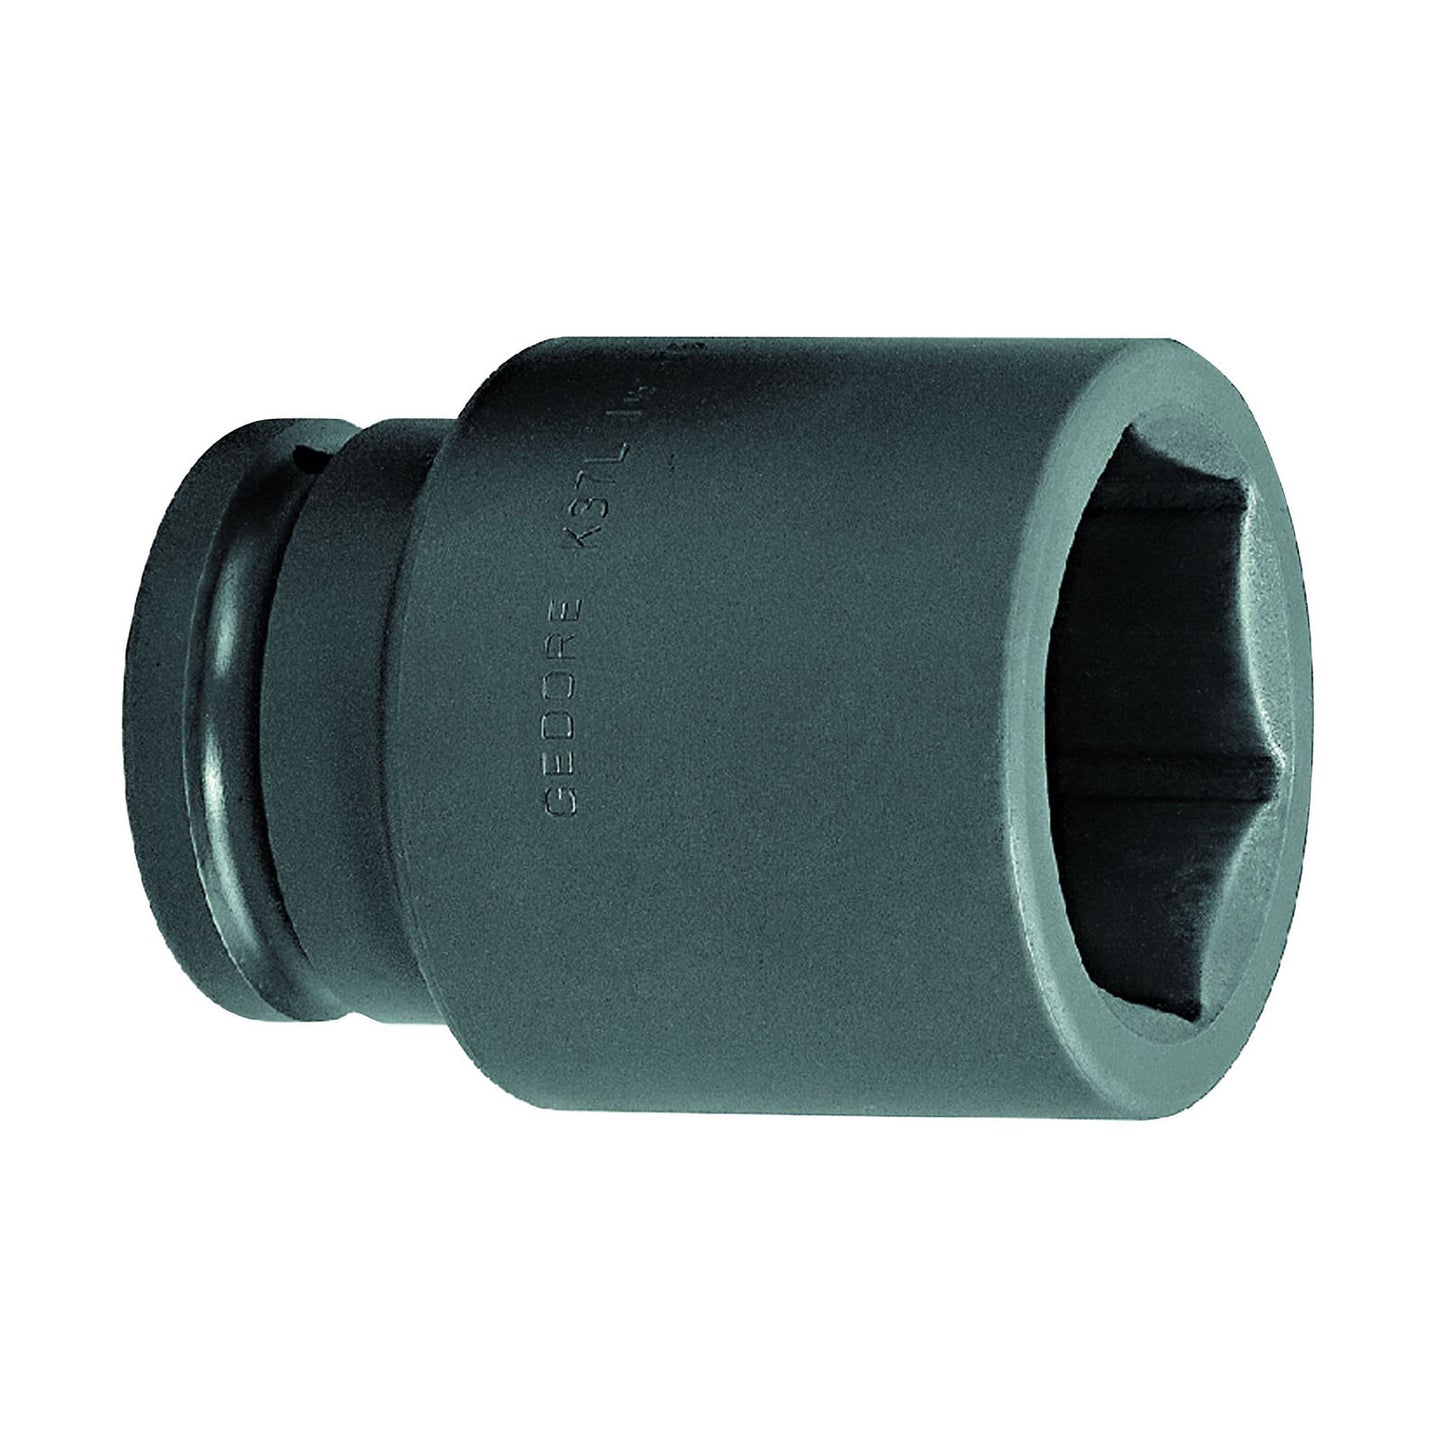 GEDORE K 37 L 75 - XL Impact Socket 1.1/2", 75 mm (6330970)